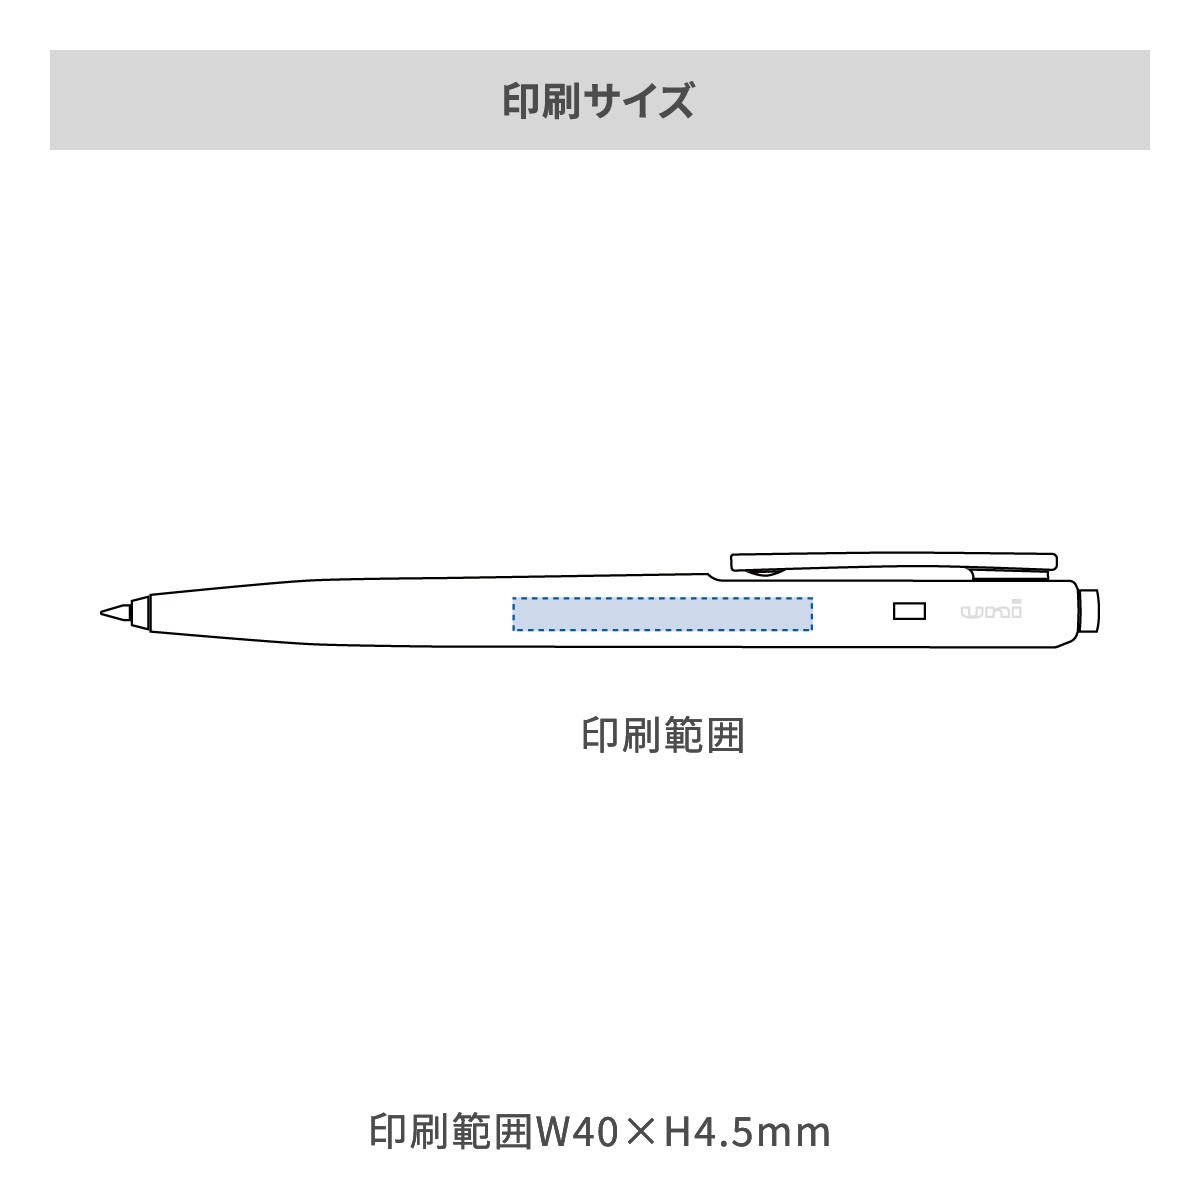 三菱鉛筆 ユニライメックス 0.7mmの名入れ範囲